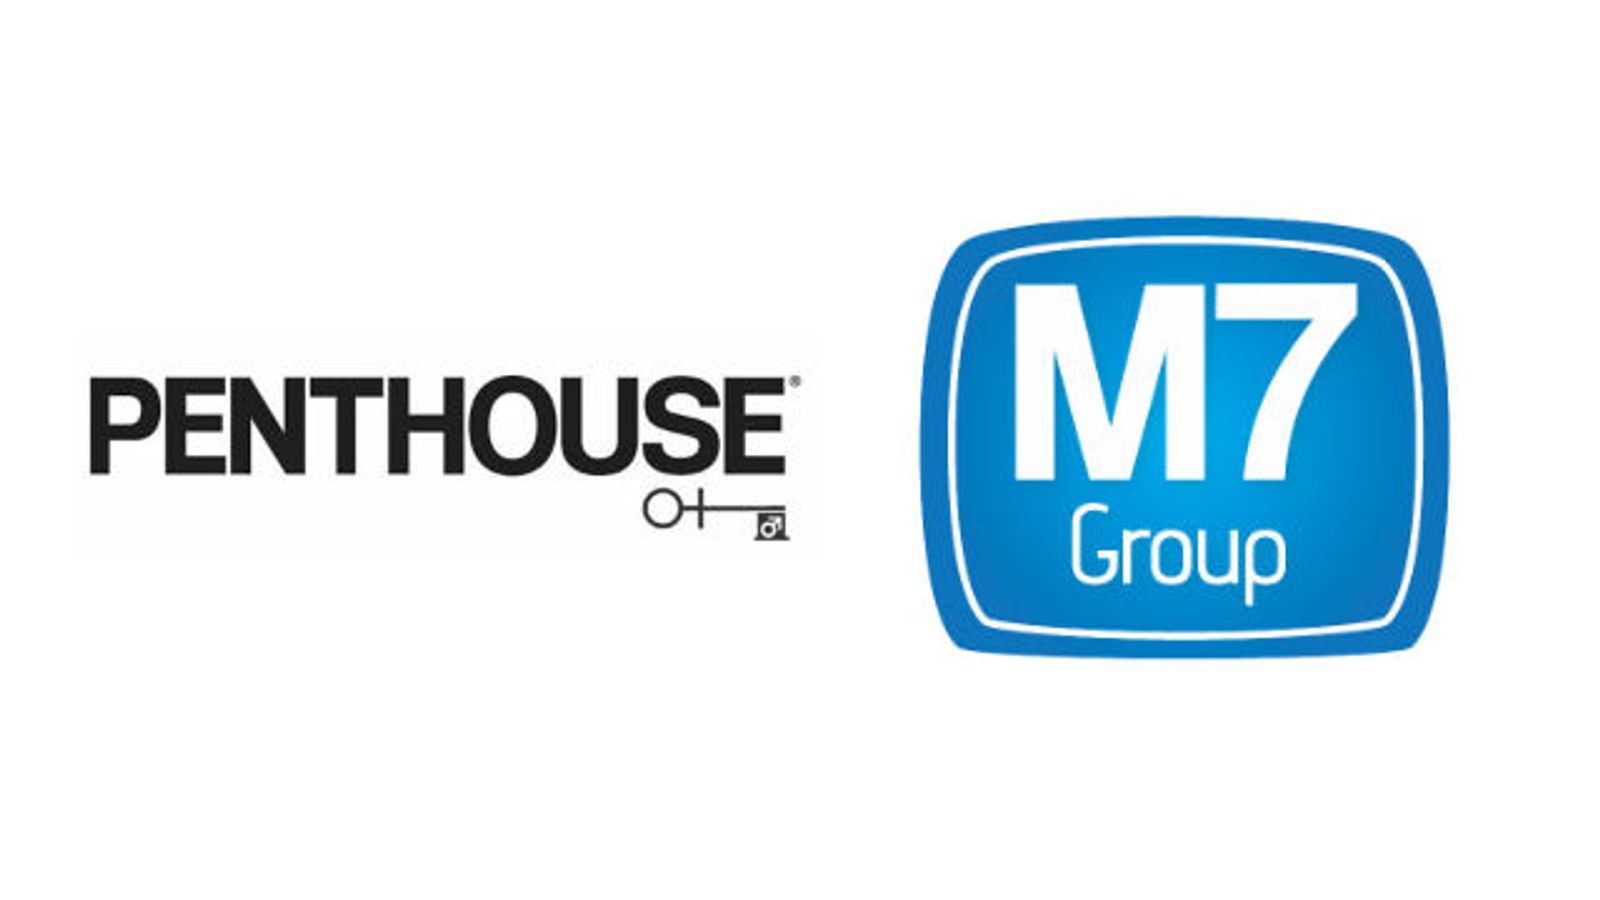 M7 Group, Penthouse Digital Ink Multi-Platform Deal